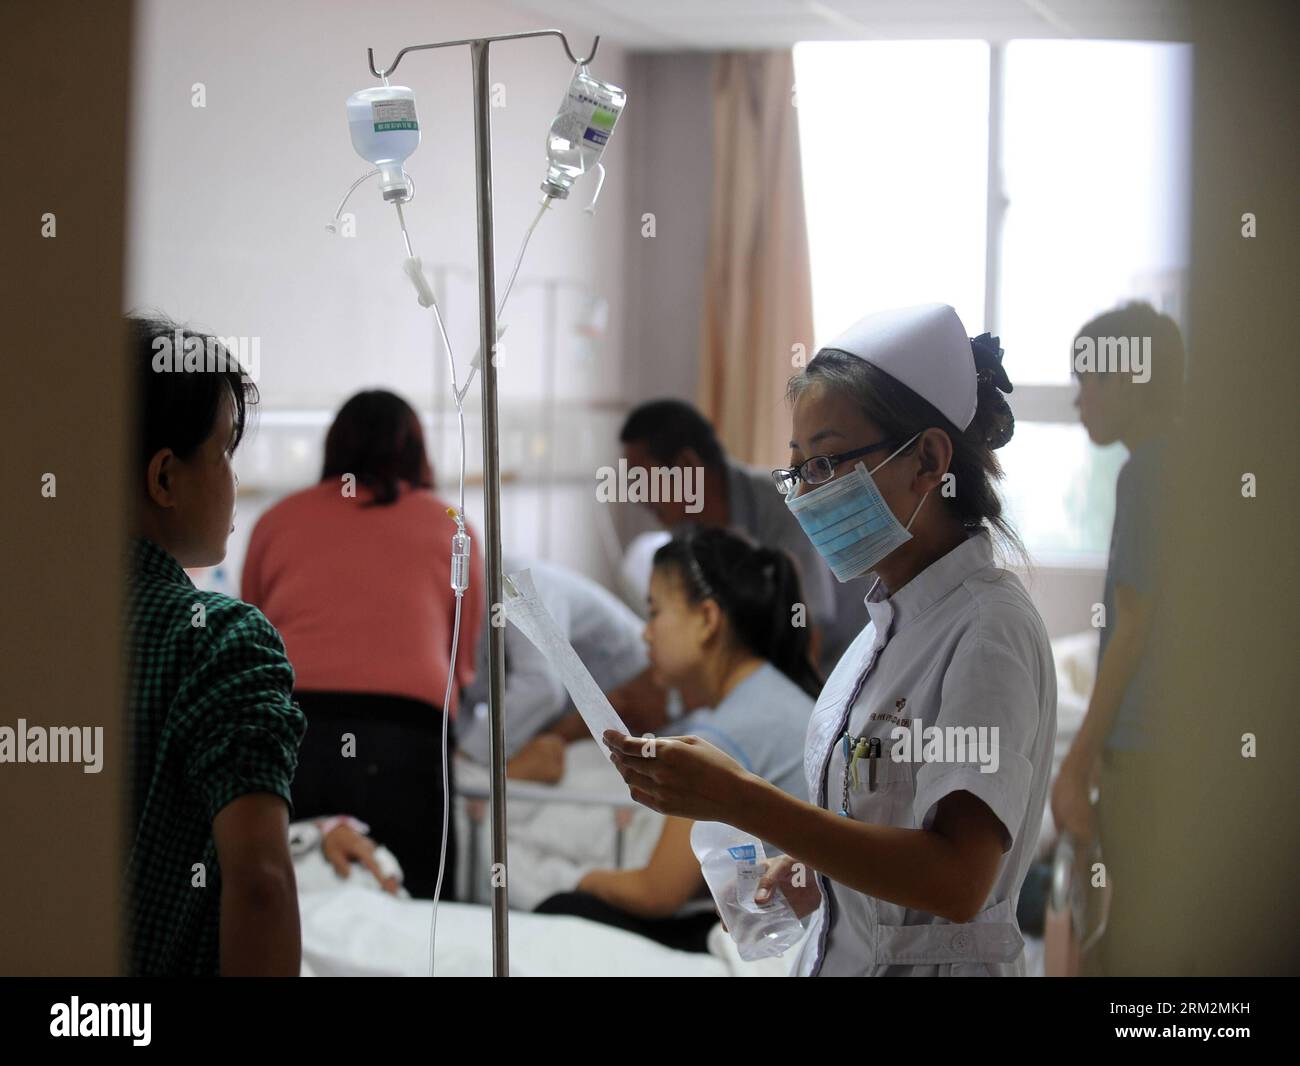 Bildnummer: 59882518 Datum: 20.06.2013 Copyright: imago/Xinhua (130621) -- SHUOZHOU, 20. Juni 2013 (Xinhua) -- Ein Mediziner spricht mit einem Familienmitglied einer verletzten Person in einem Krankenhaus in Shuozhou, nordchinesische Provinz Shanxi, 20. Juni 2013. Ein Feuer und eine anschließende Explosion, die Mittwochnacht durch ein Restaurant in Shuozhou gerissen wurde, hat mindestens drei Tote und 149 weitere verletzt, darunter 19 schwer verletzt. (Xinhua/Yan Yan) (zc) CHINA-SHANXI-SHUOZHOU-RESTAURANT EXPLOSIONSBEHANDLUNG (CN) PUBLICATIONXNOTXINXCHN Gesellschaft Gesundheit Krankenhaus Feuer Brand Opfer x0x xst 20 Stockfoto